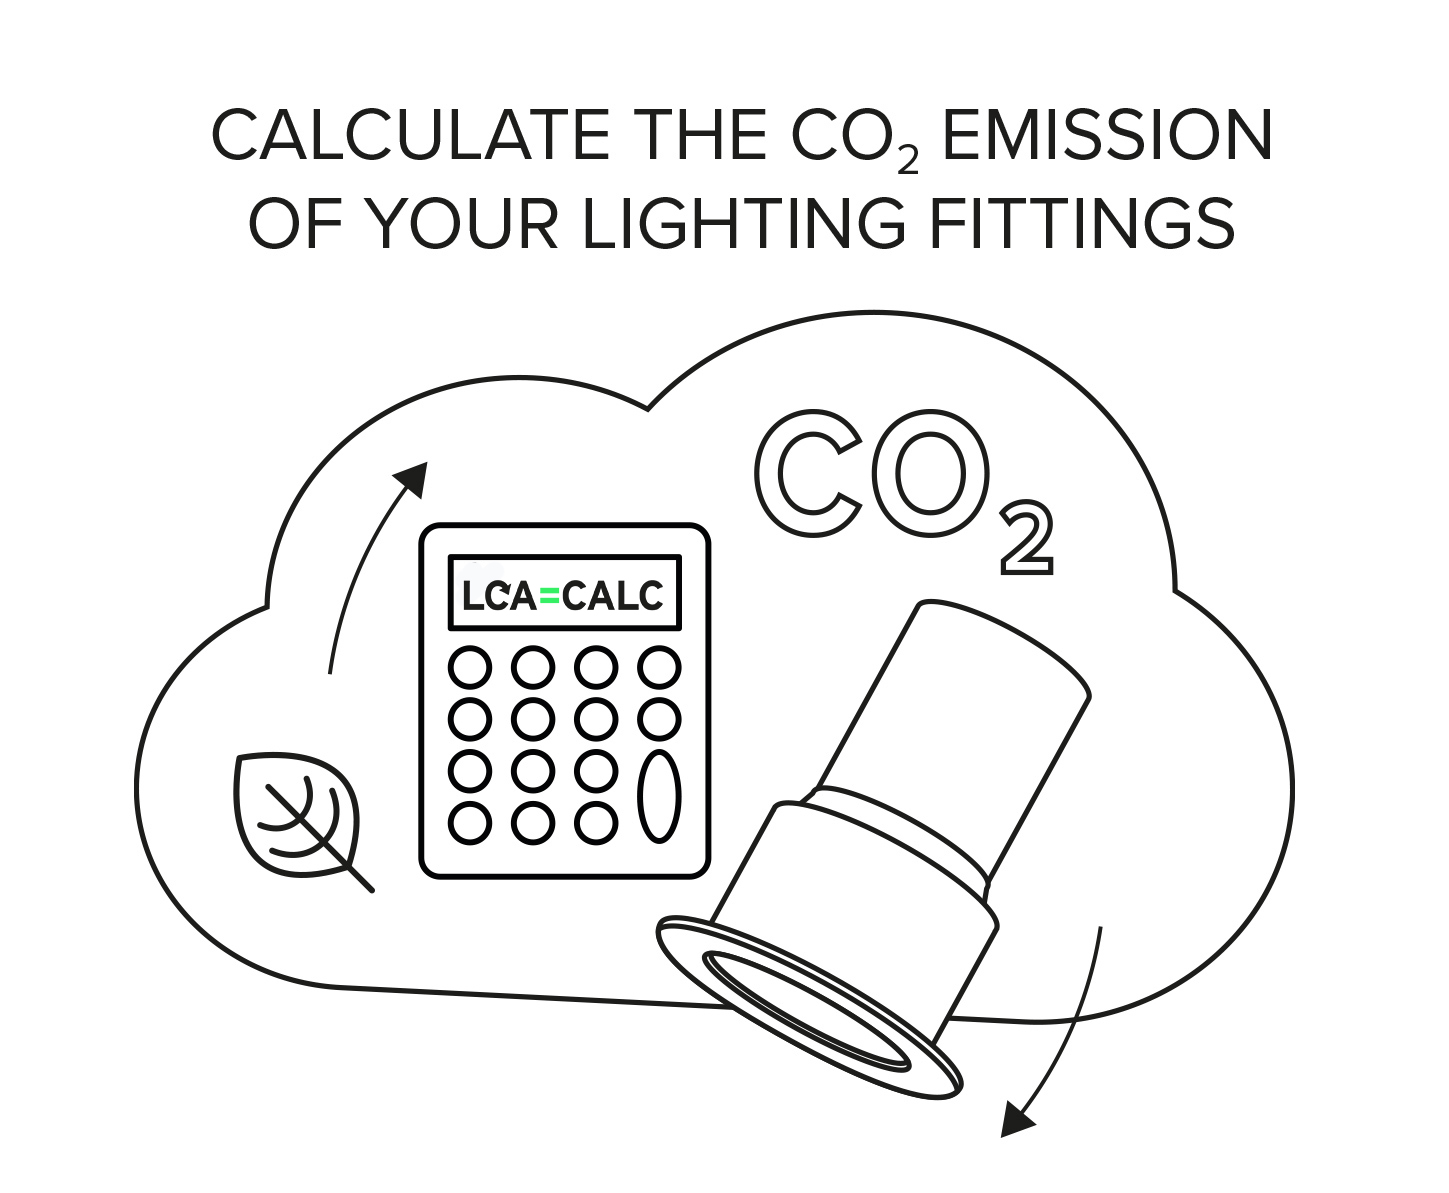 LCA CALC CO2 emissions